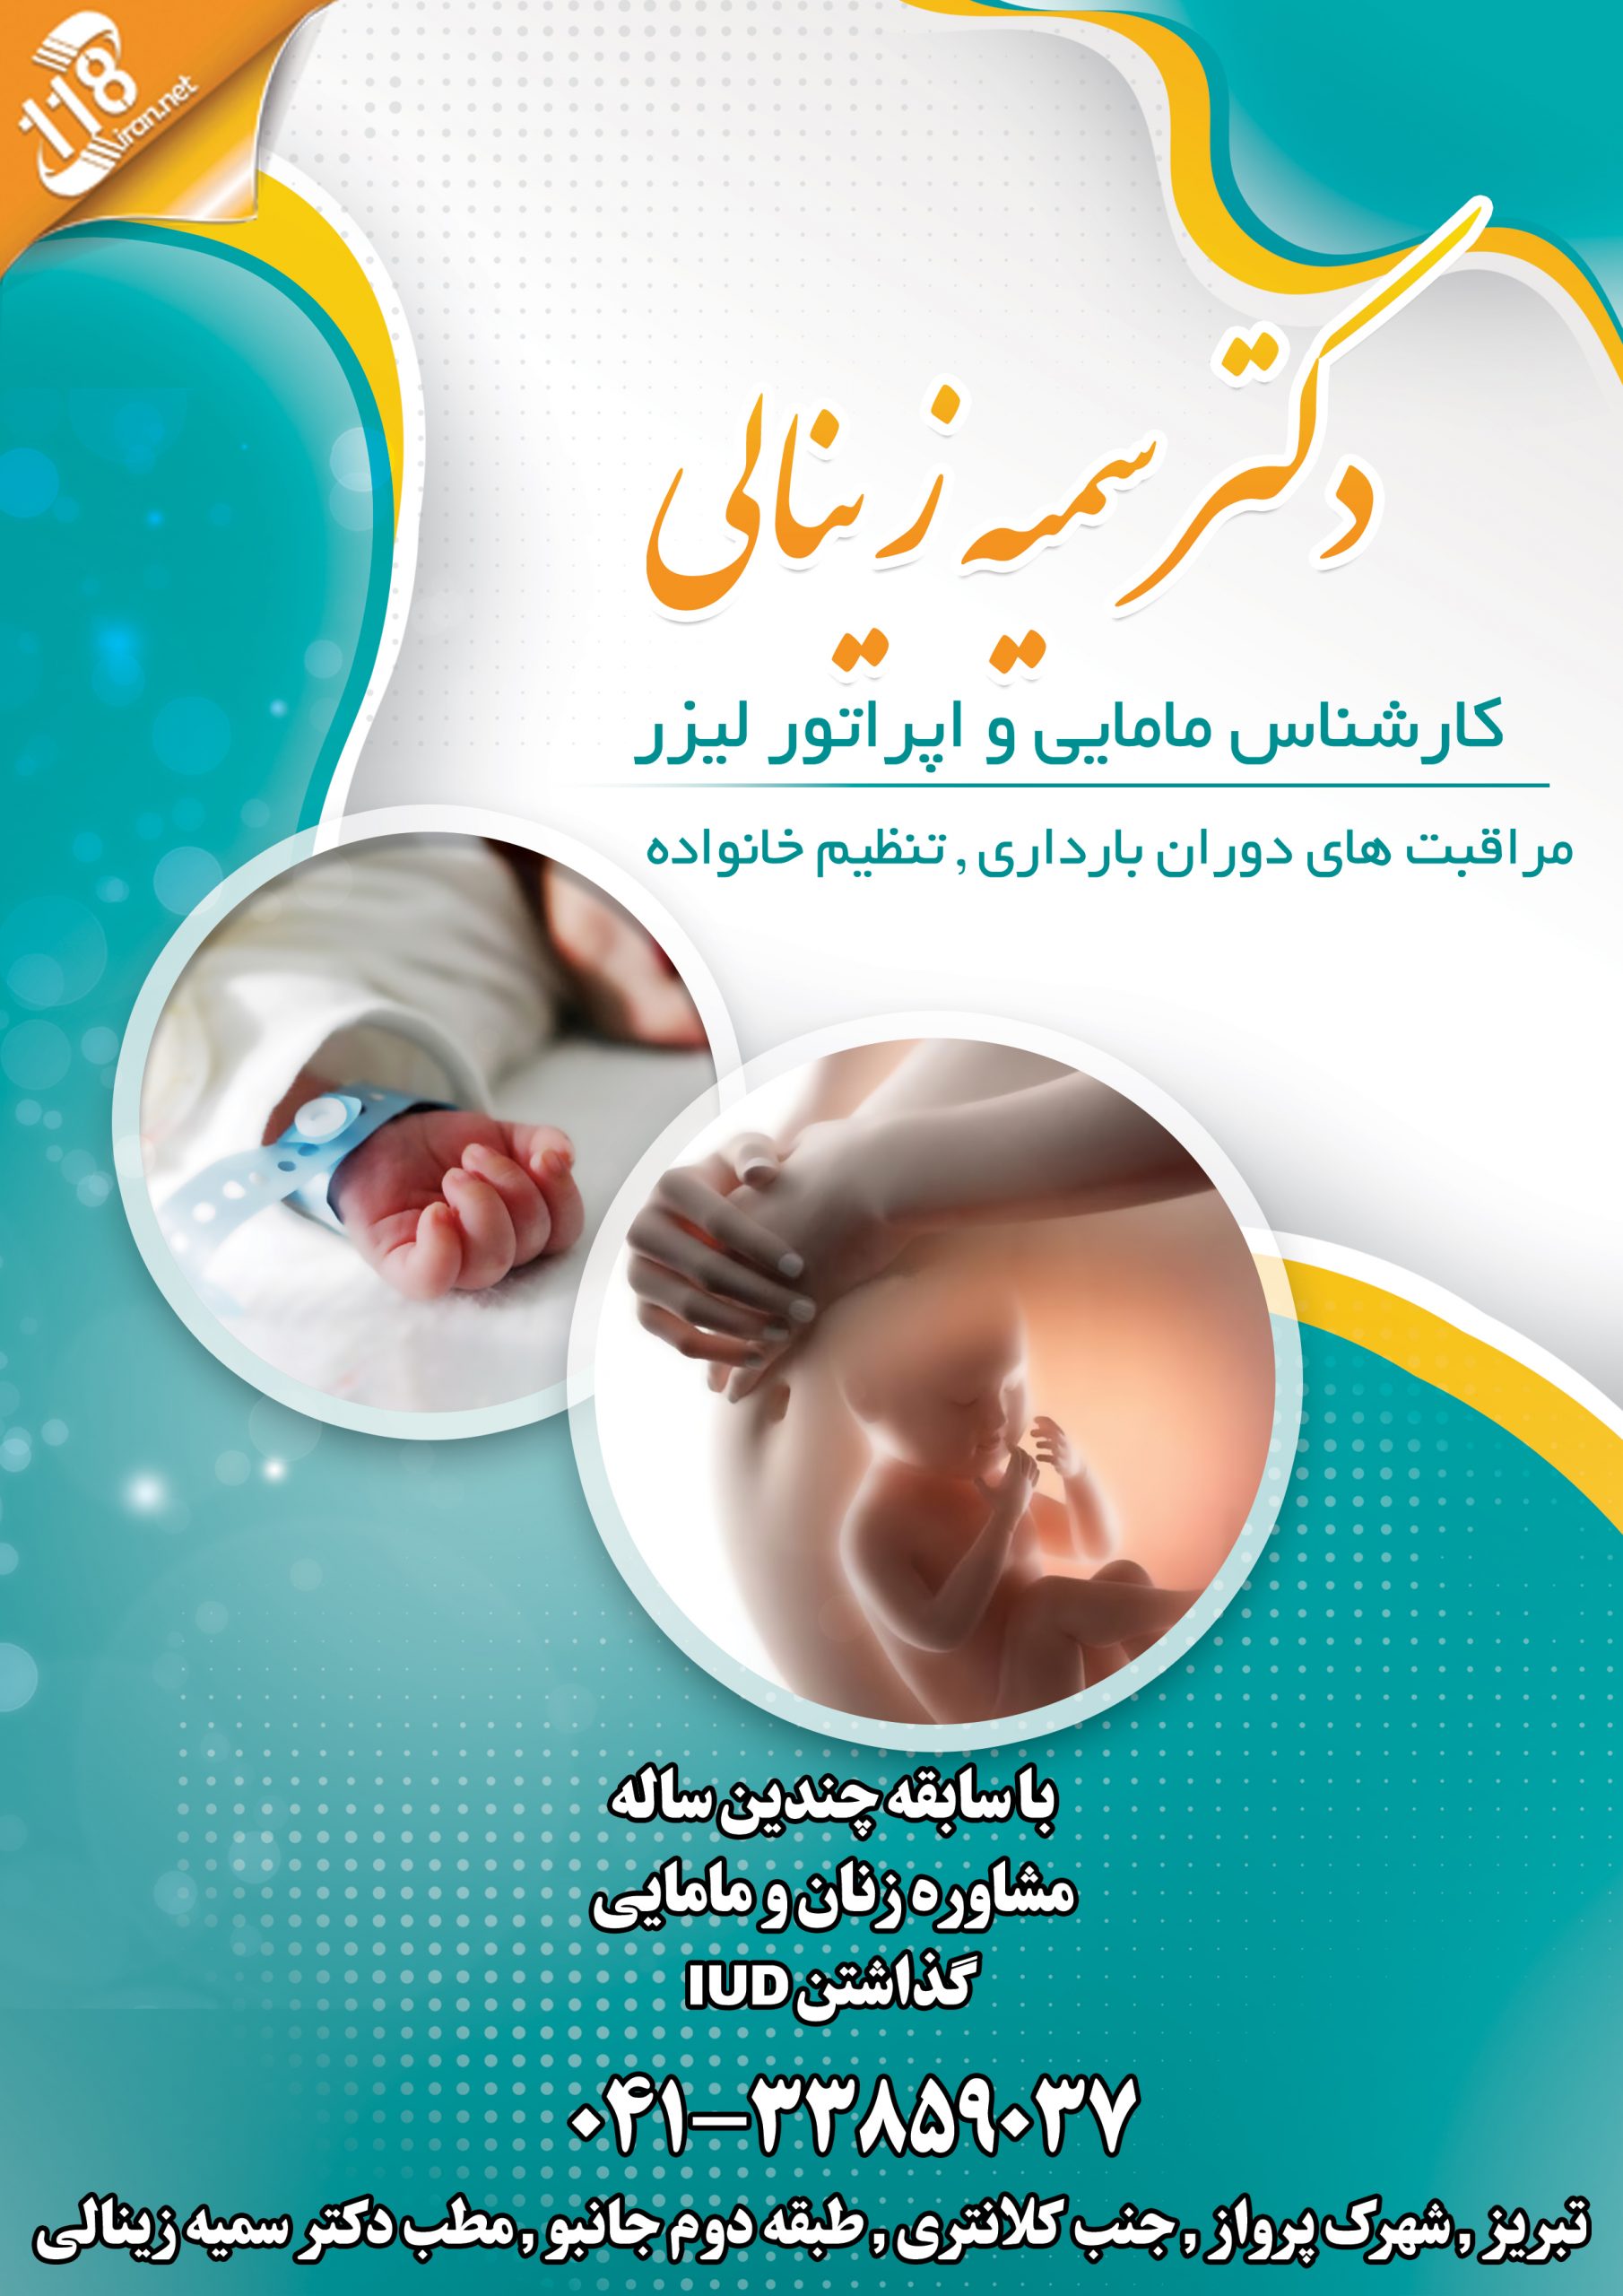  دکتر سمیه زینالی در تبریز 